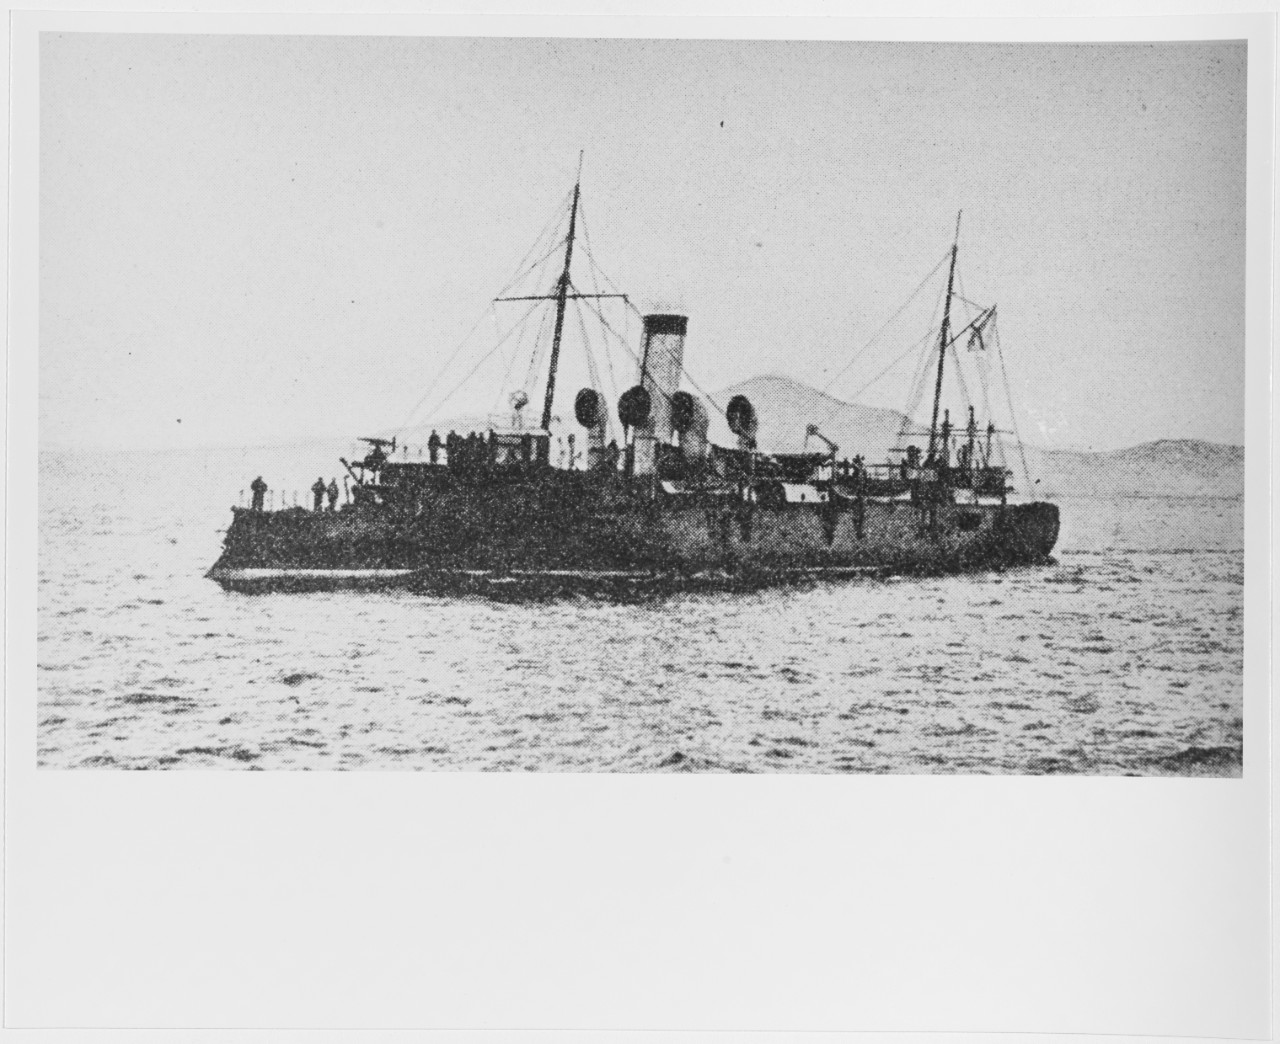 OTVAZHNI (Russian armored gunboat, 1892-1905)